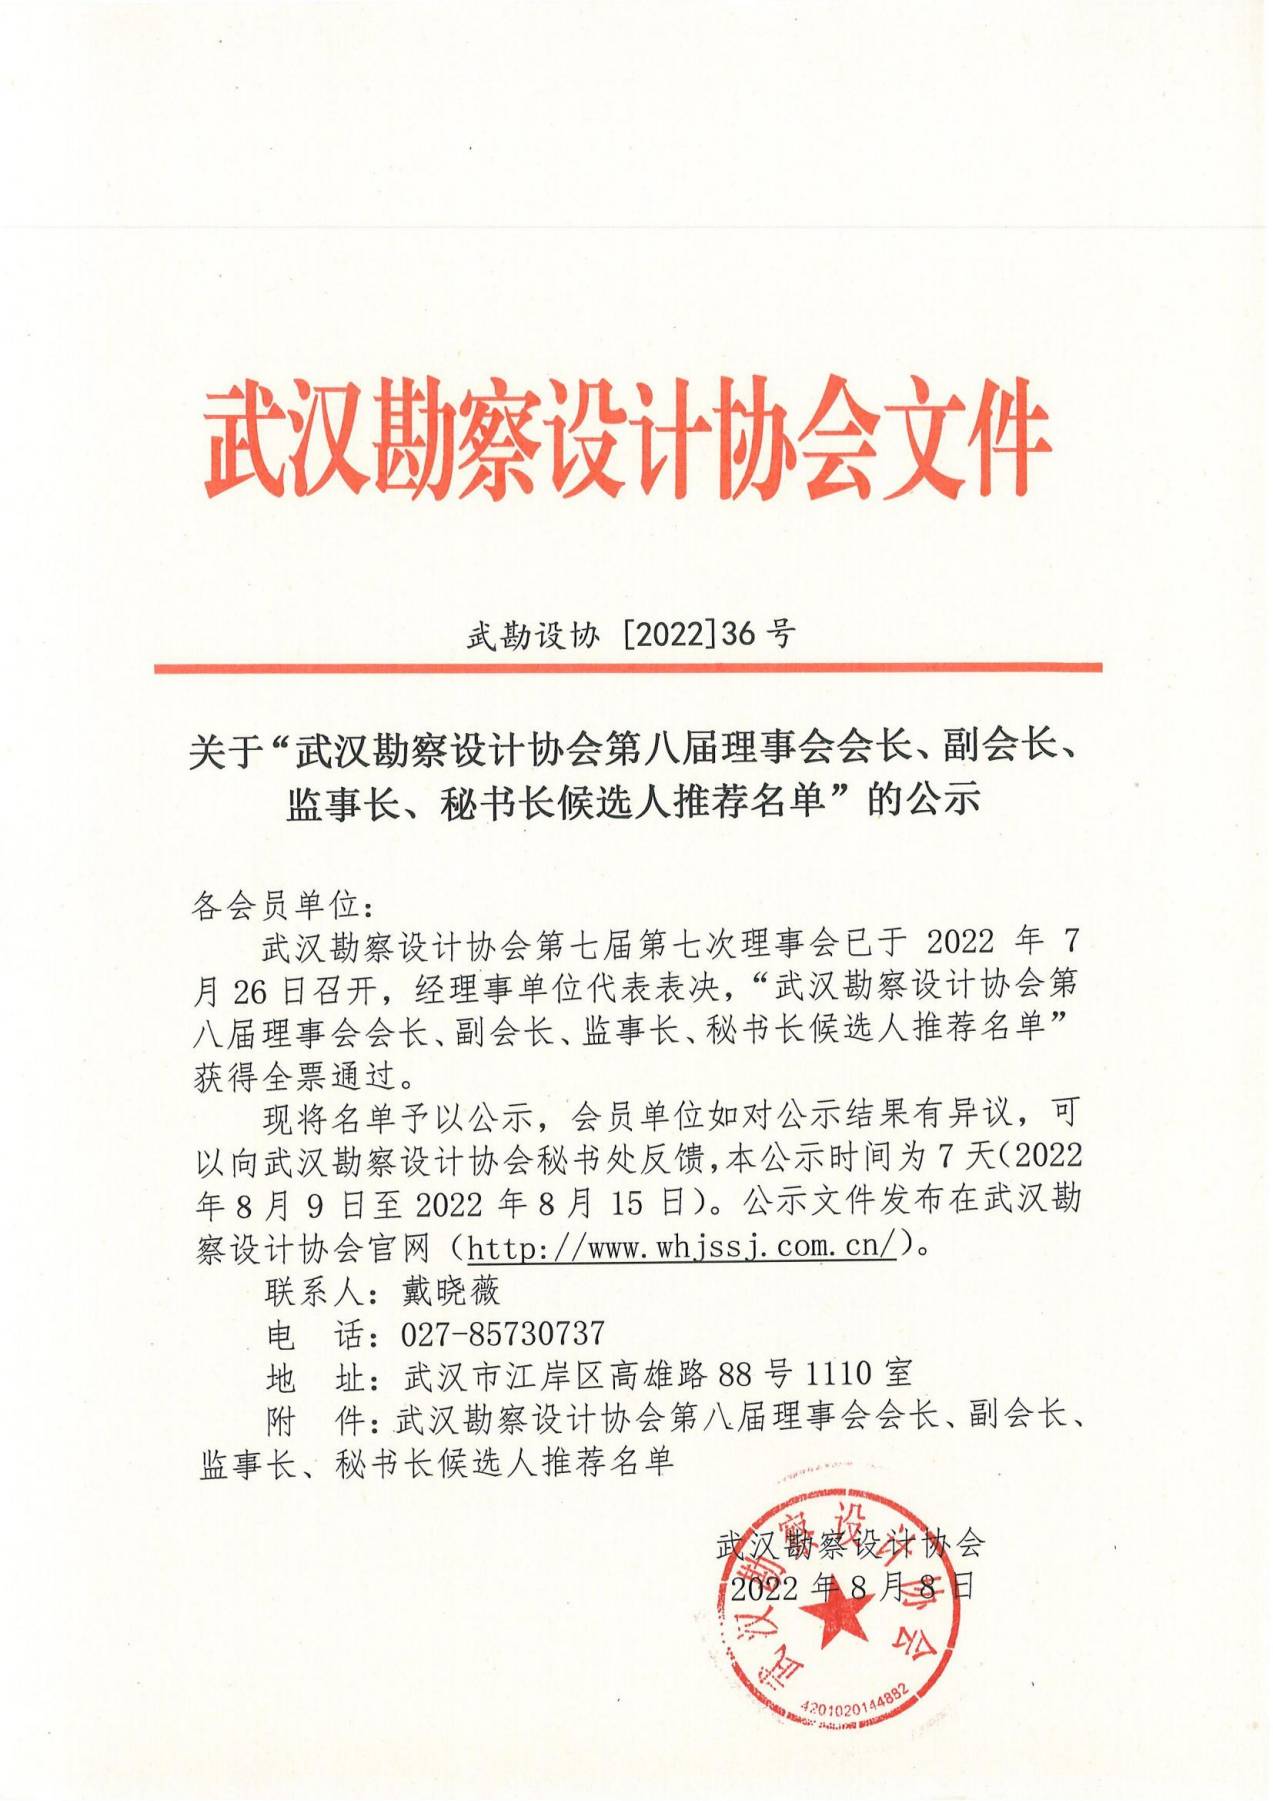 关于“武汉勘察设计协会第八届理事会会长、副会长、监事长、秘书长候选人推荐名单”的公示